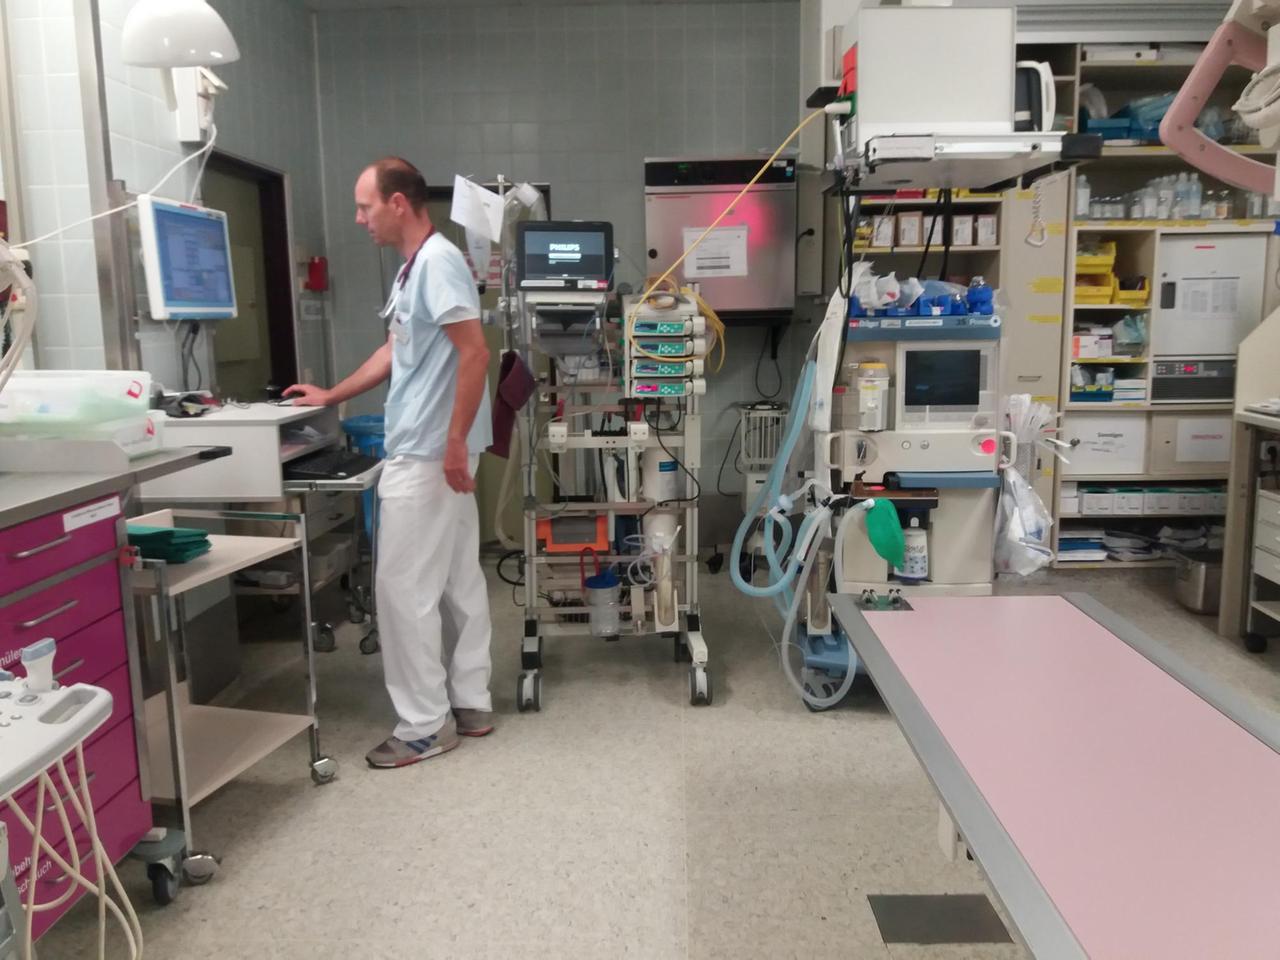 Das Bild zeigt den Oberarzt Thomas Händl in einem Schockraum der Augsburger Notaufnahme mit den verschiedensten medizinischen Gerätschaften. Hier sieht man ihn stehend an einem Computer arbeiten.